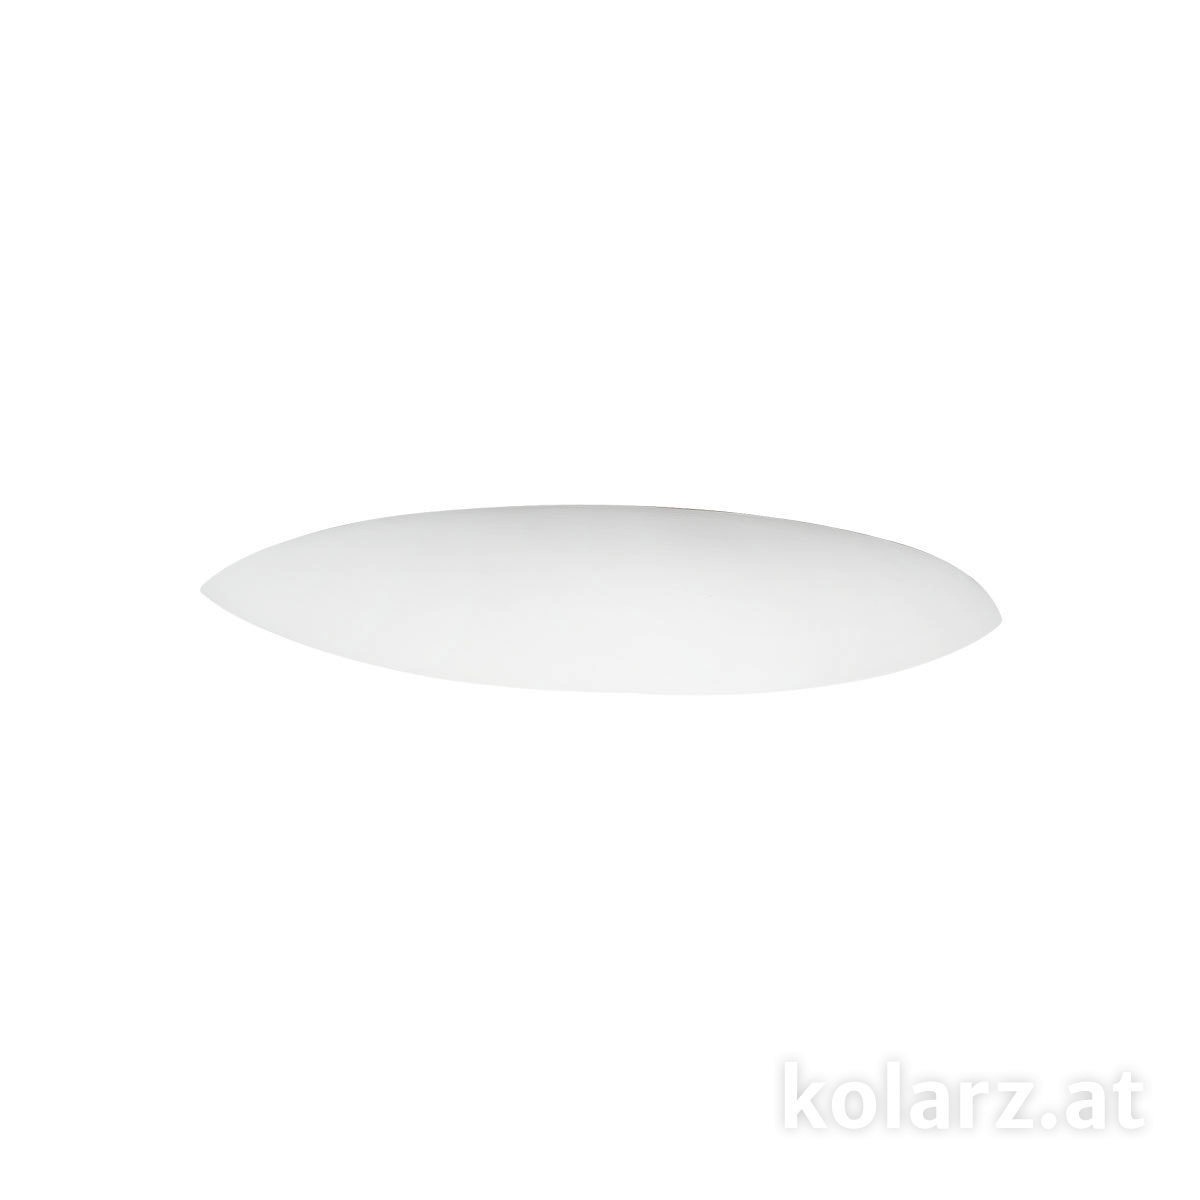 Moderne  fürs Esszimmer von KOLARZ Leuchten Elegance Wandleuchte 219.60.1